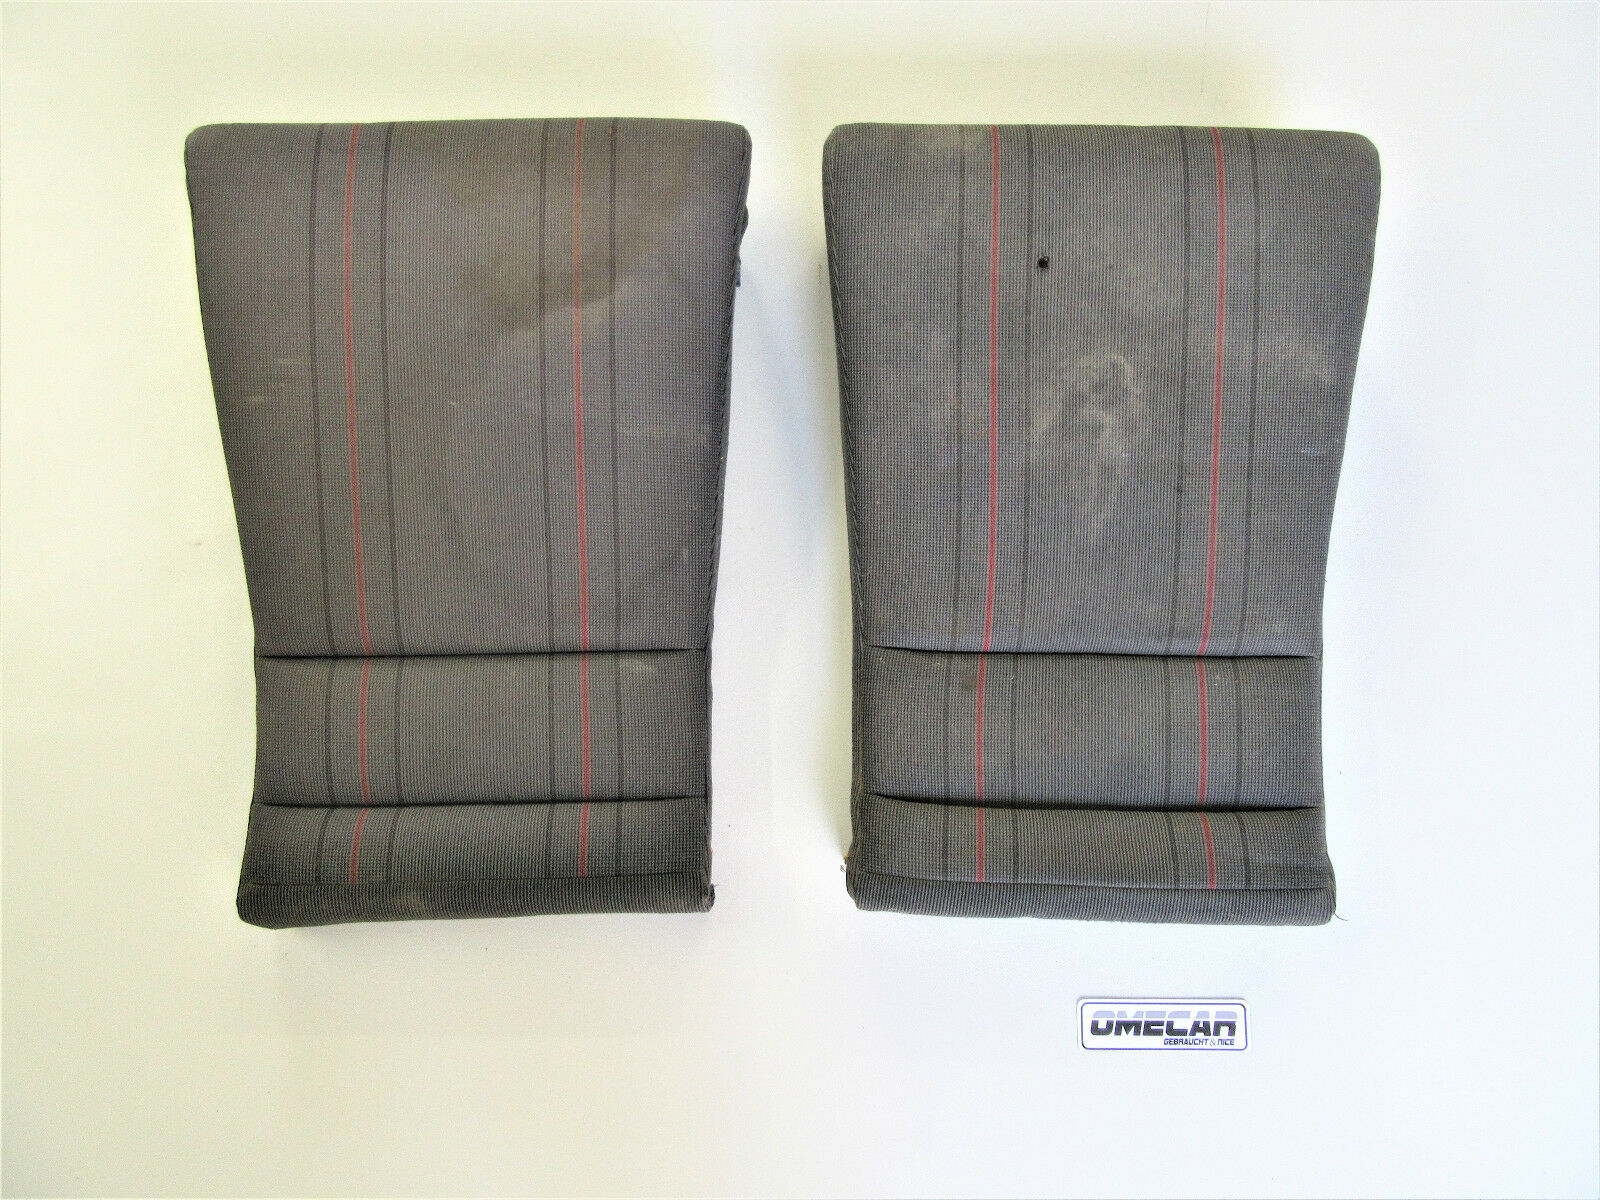 Bezugsstoff Sitzbezug Sitz Stoff Schwarz Uni passend für VW Golf -  Ersatzteile in Originalqualität für alle VW Golf 2 Modelle Typ 19E / MK2 -  Lager von Neuteilen und Gebrauchtteilen